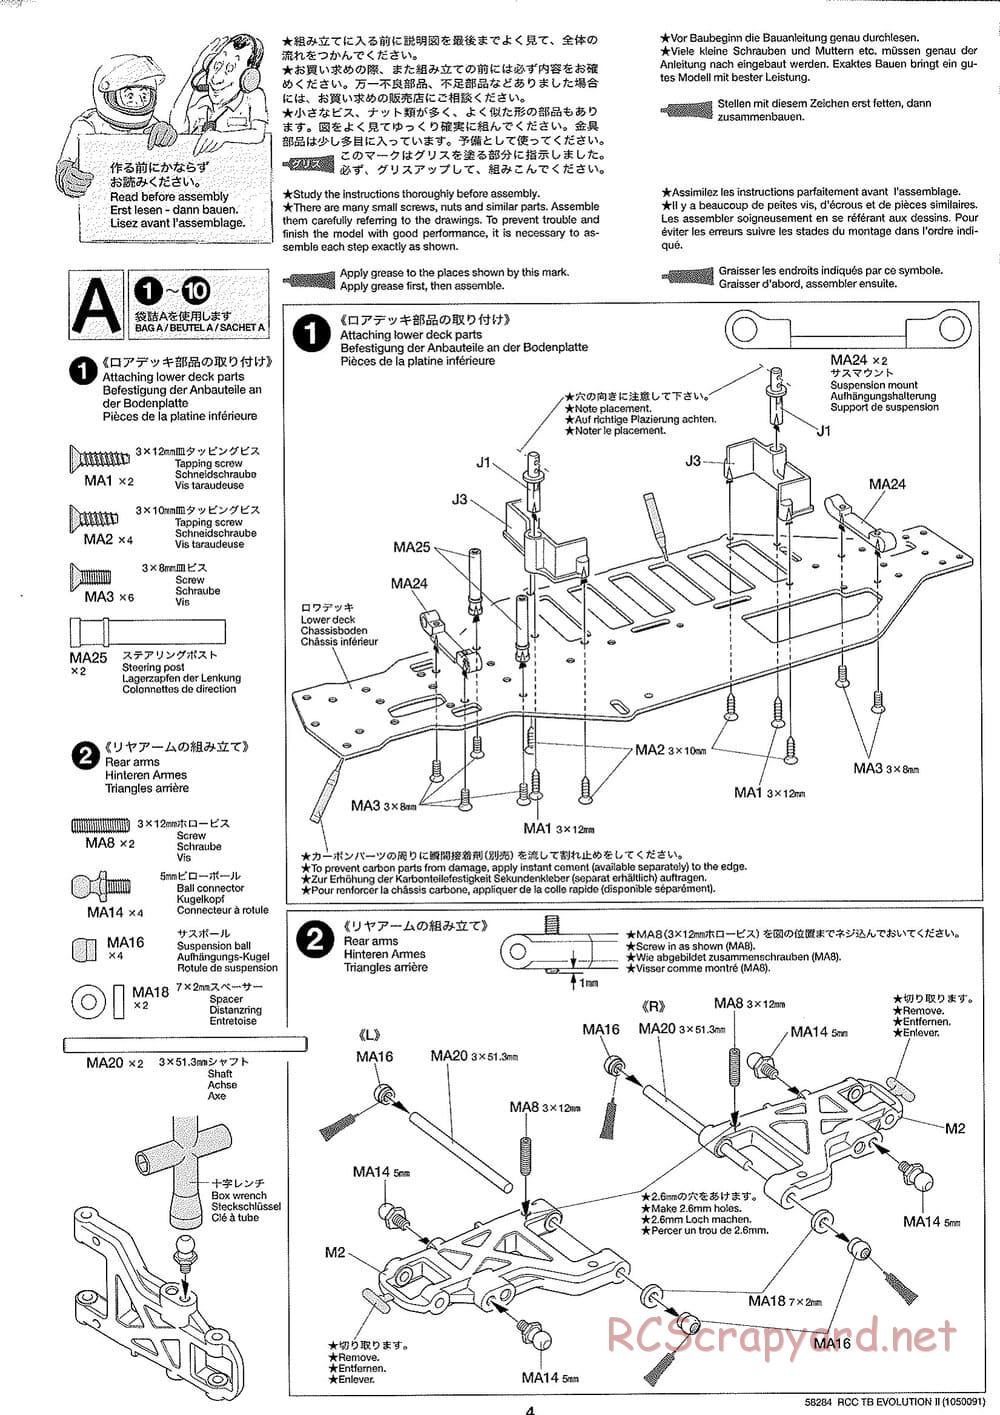 Tamiya - TB Evolution II Chassis - Manual - Page 4